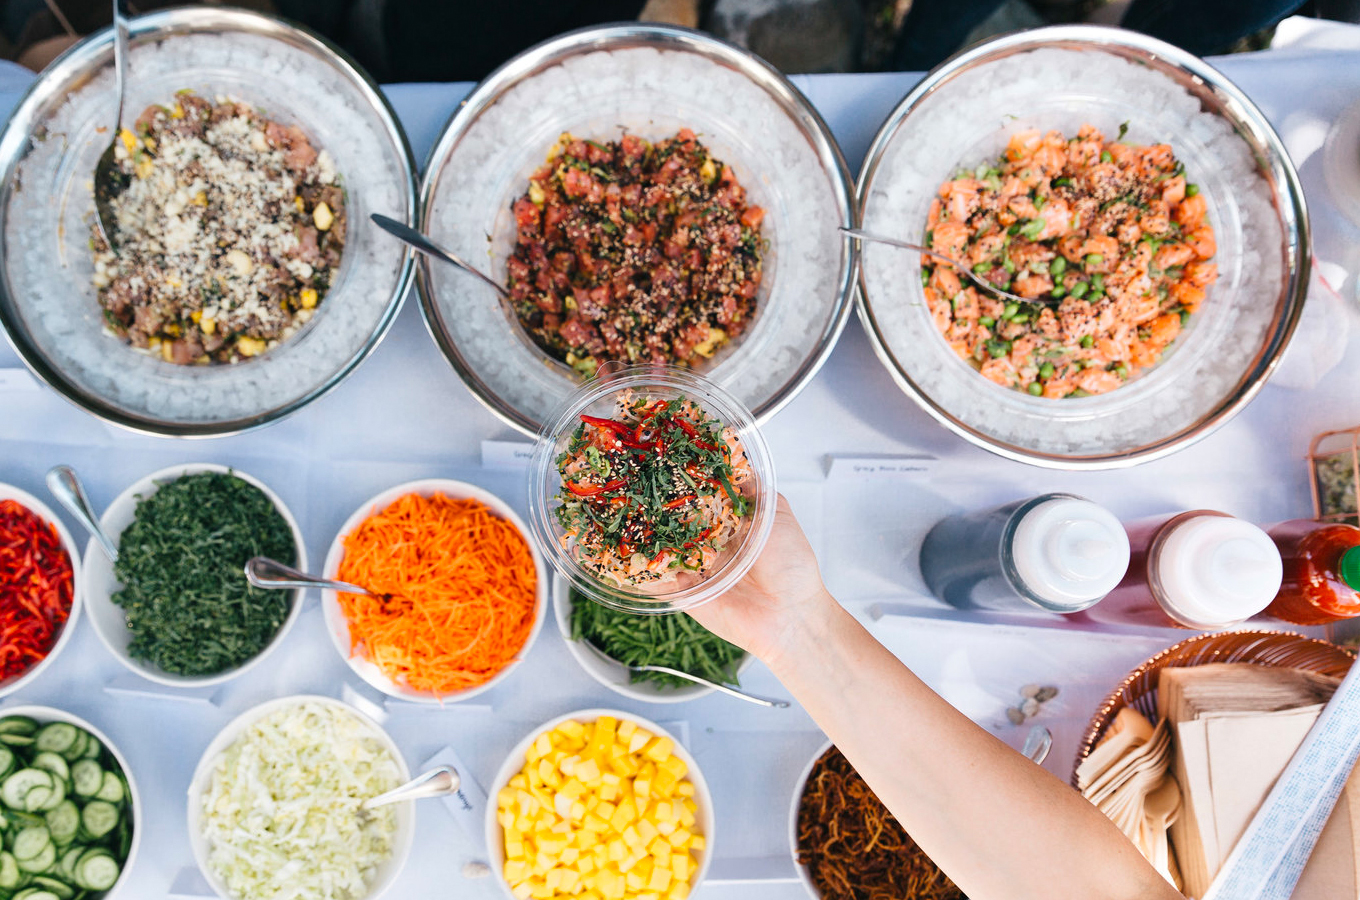 Покемания: как гавайское блюдо стало фуд-трендом и частью Instagram-культуры